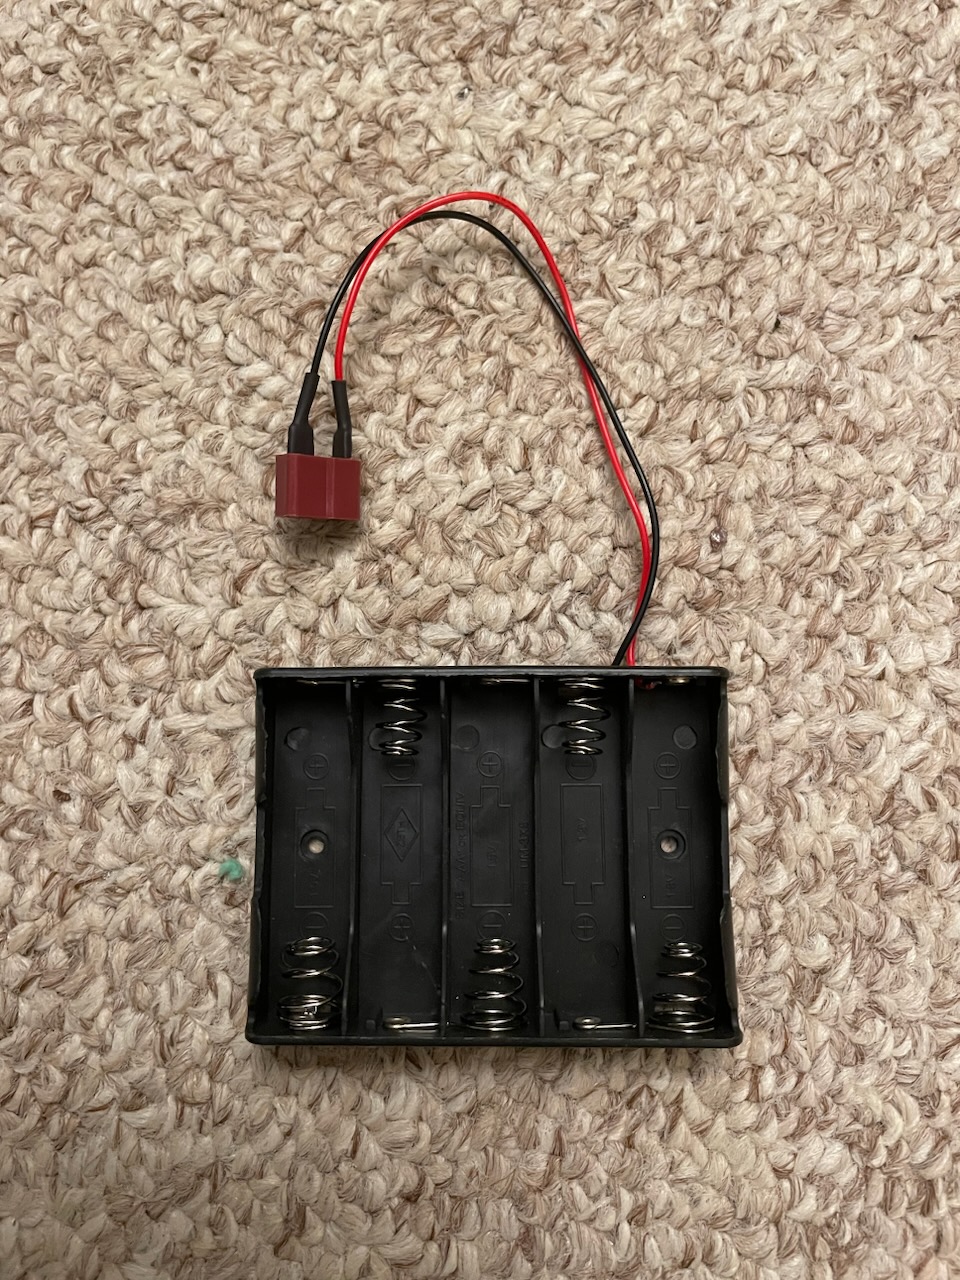 battery case